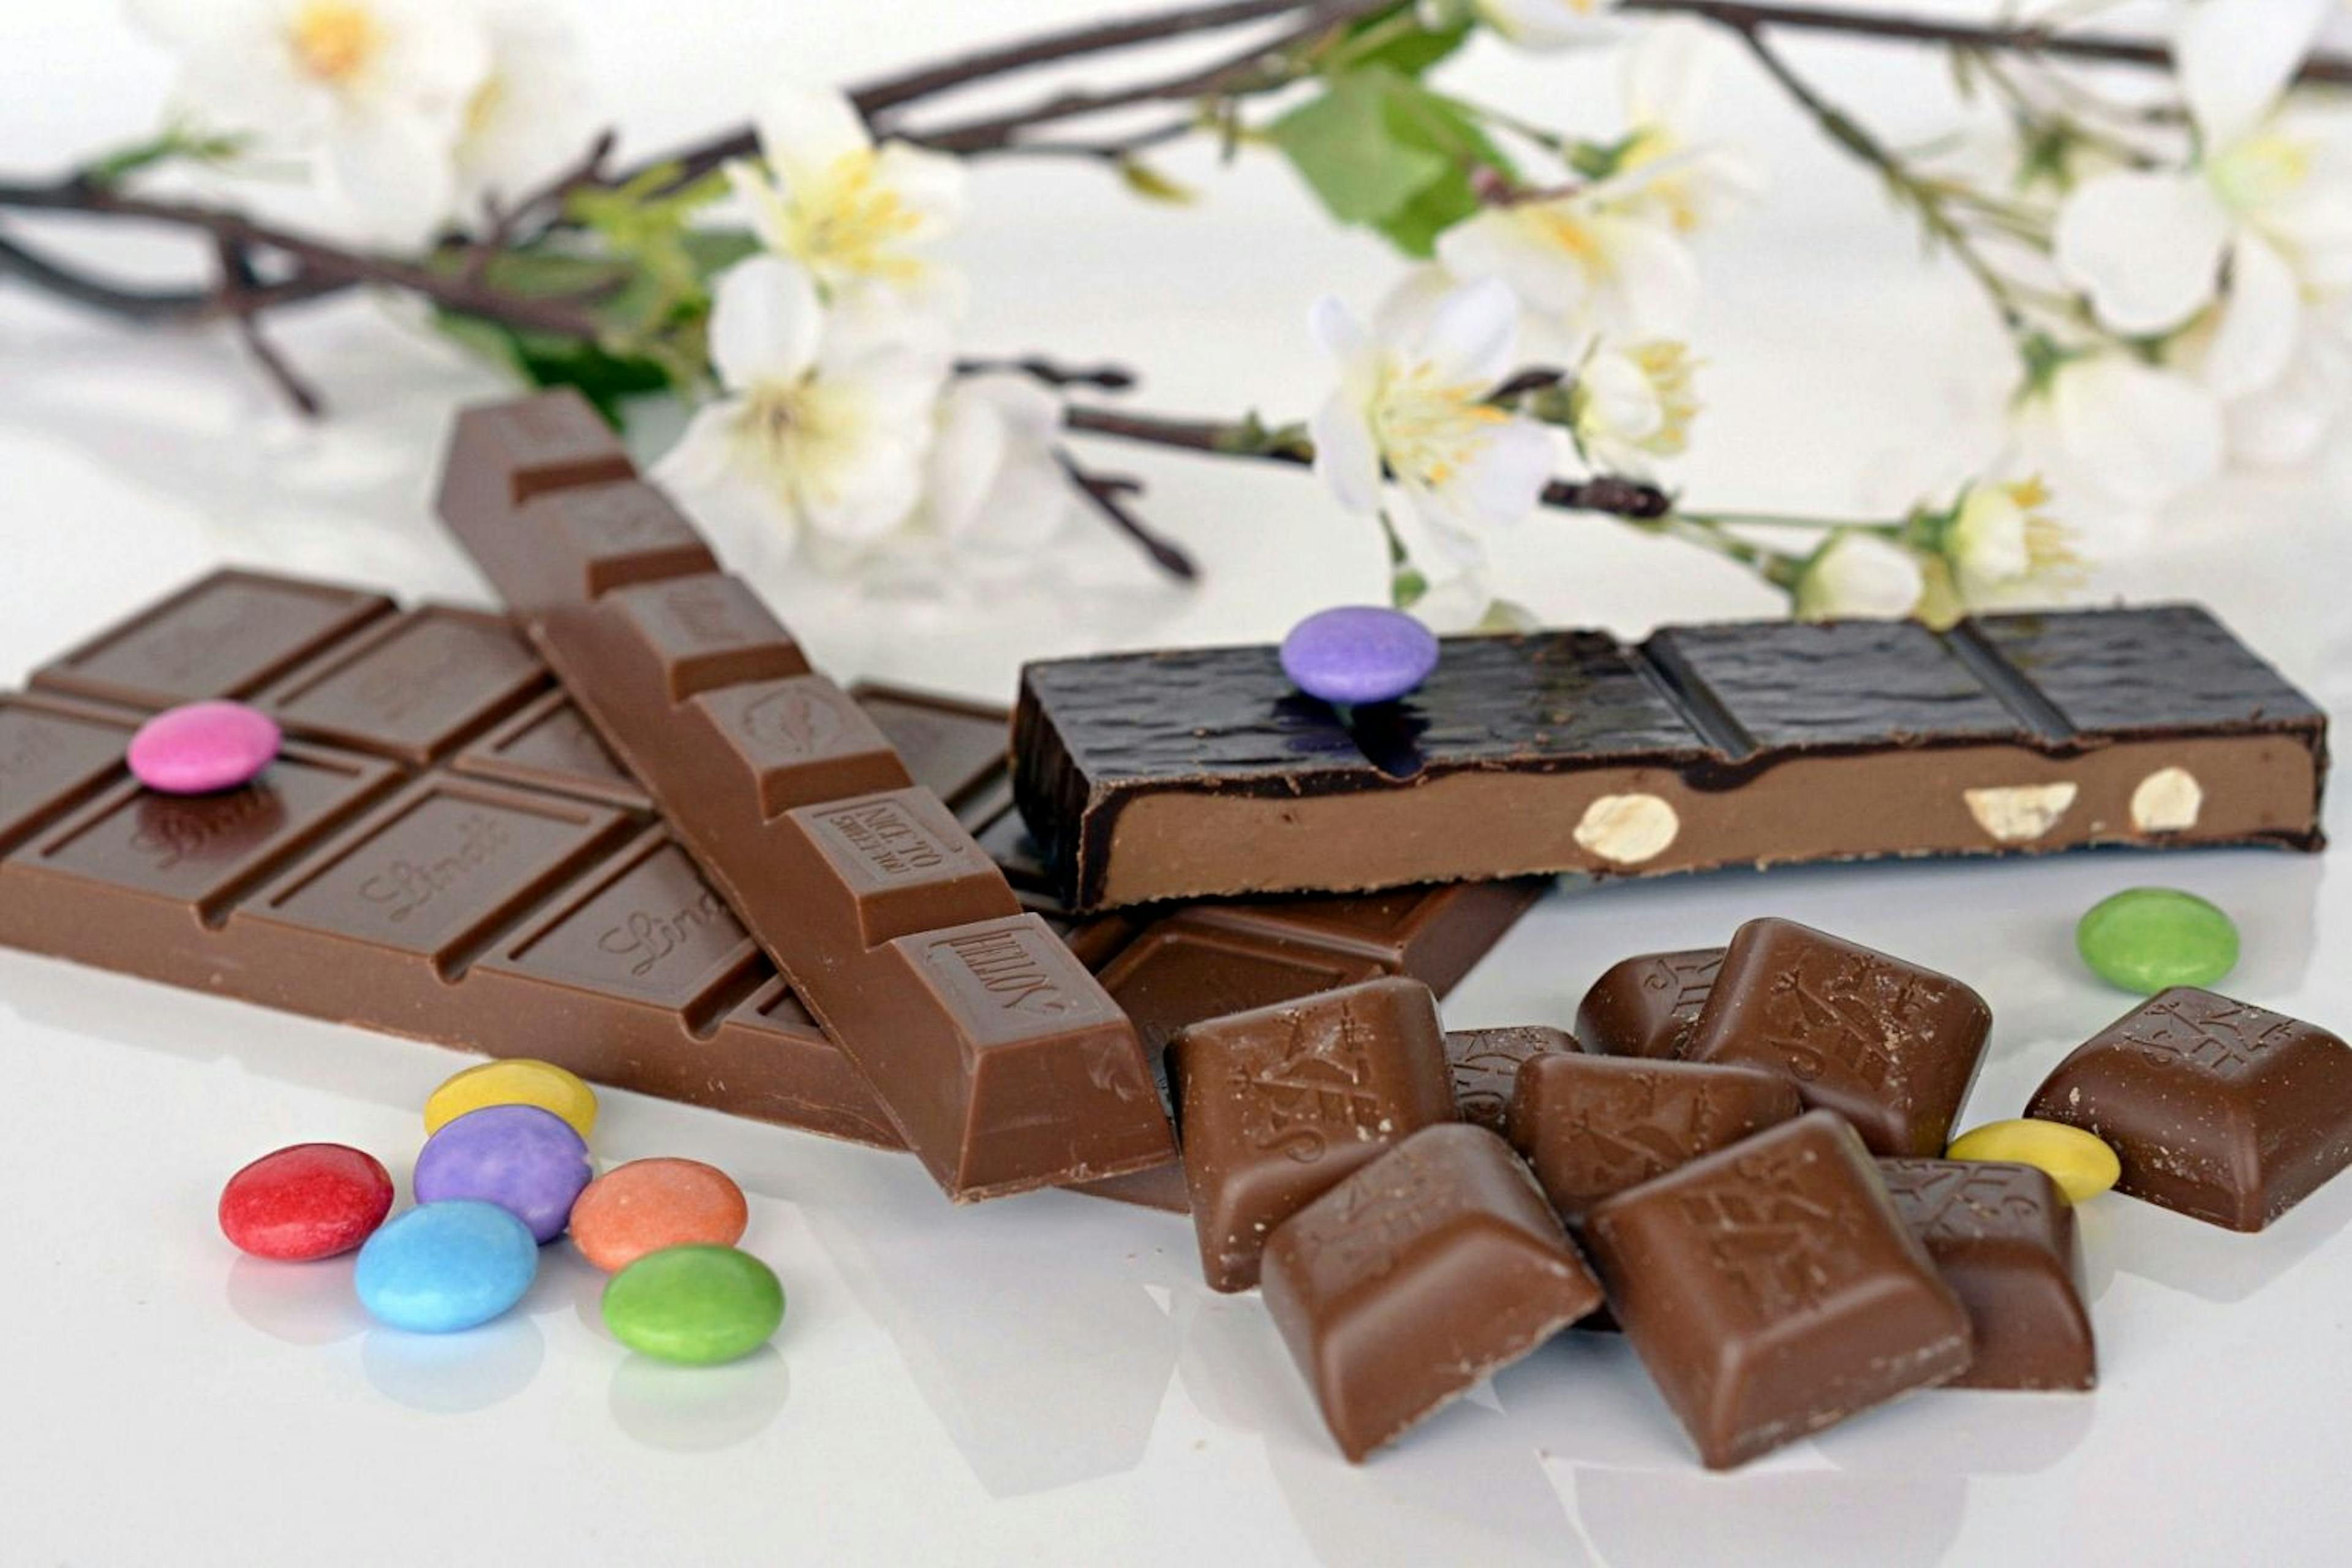 Les 5 meilleures marques de chocolat suisse